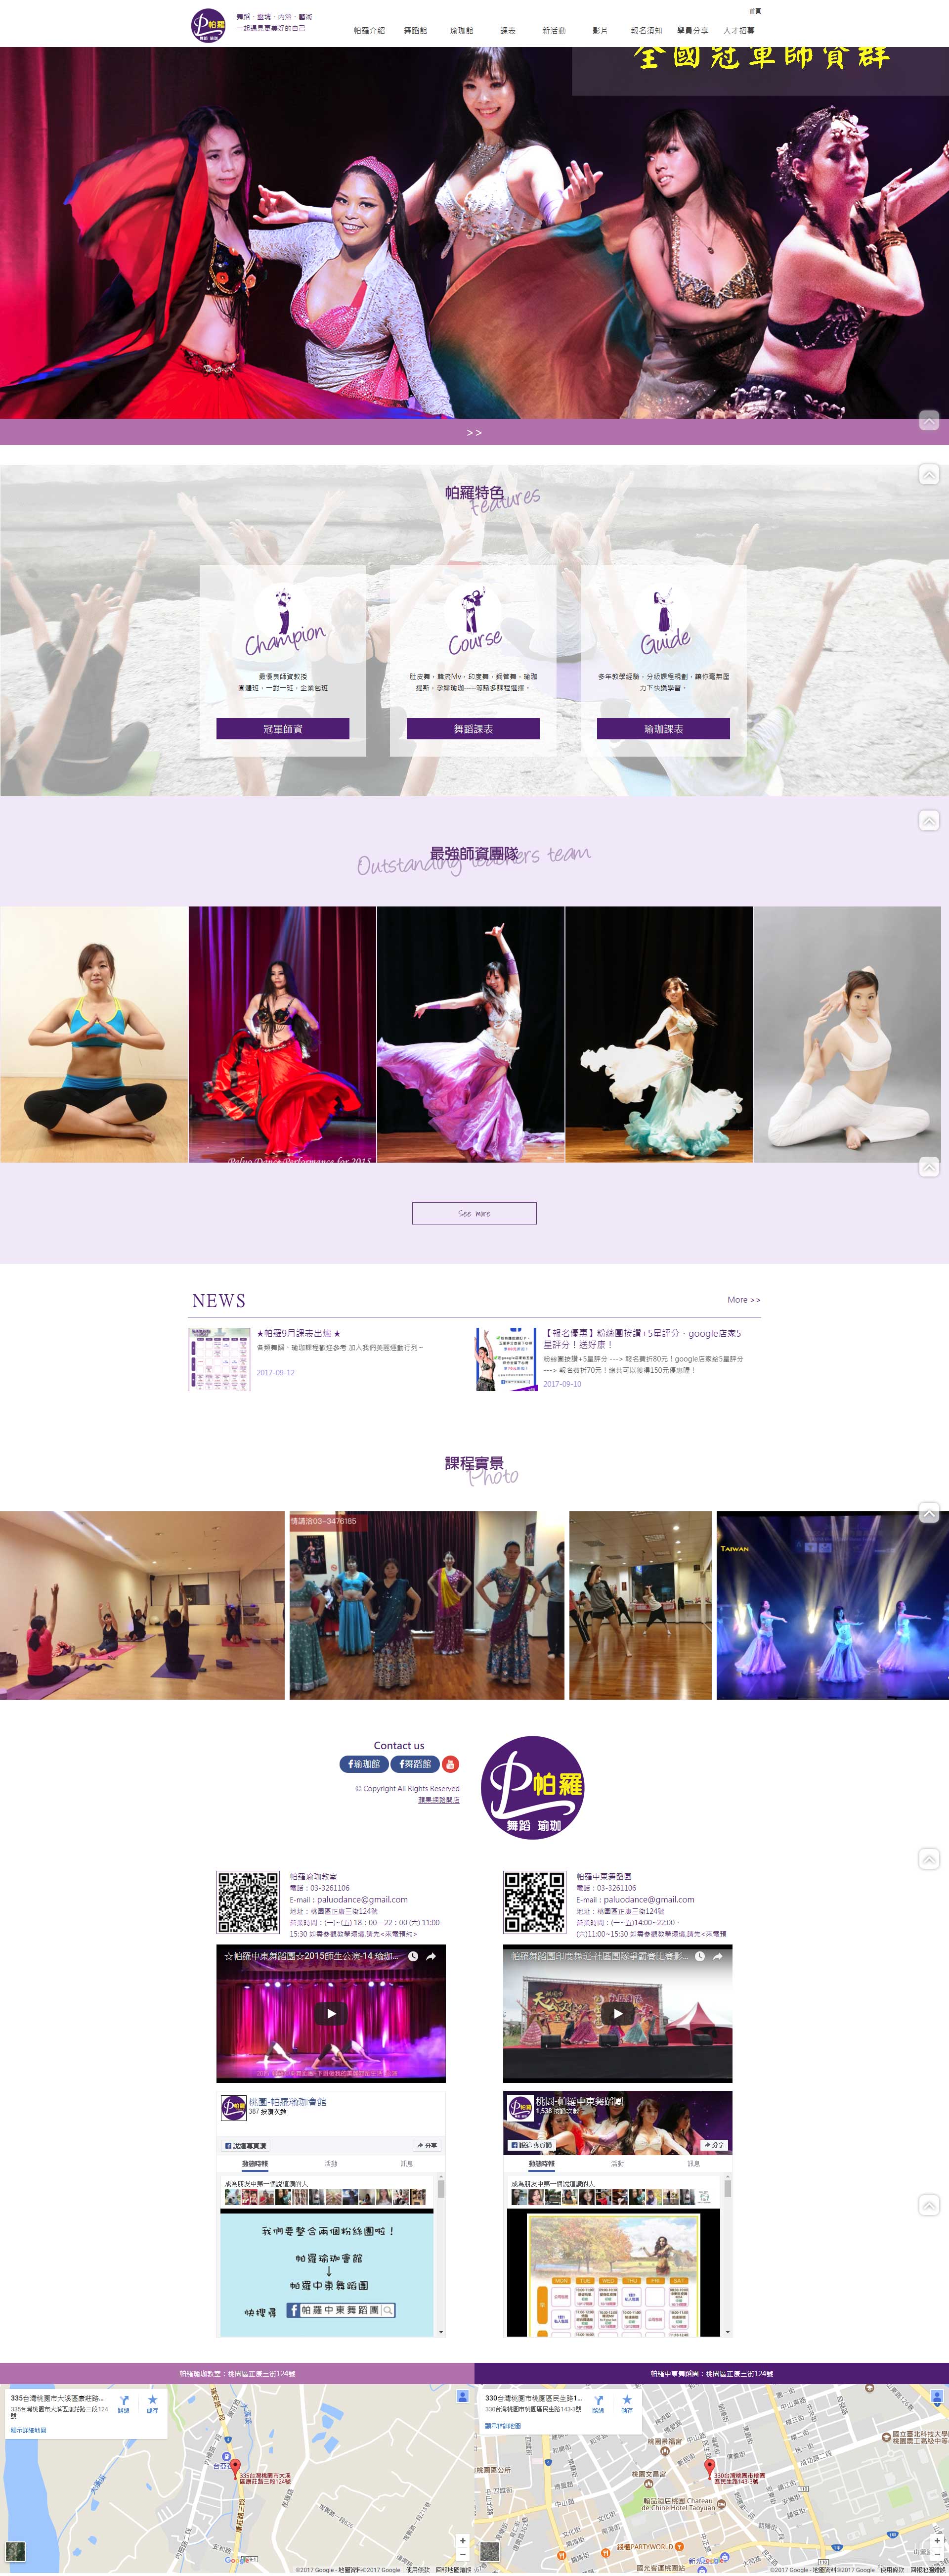 帕羅中東舞蹈團-高雄網頁設計-蘋果SEO網頁設計超值特惠方案-RWD響應式網站-帕羅中東舞蹈團